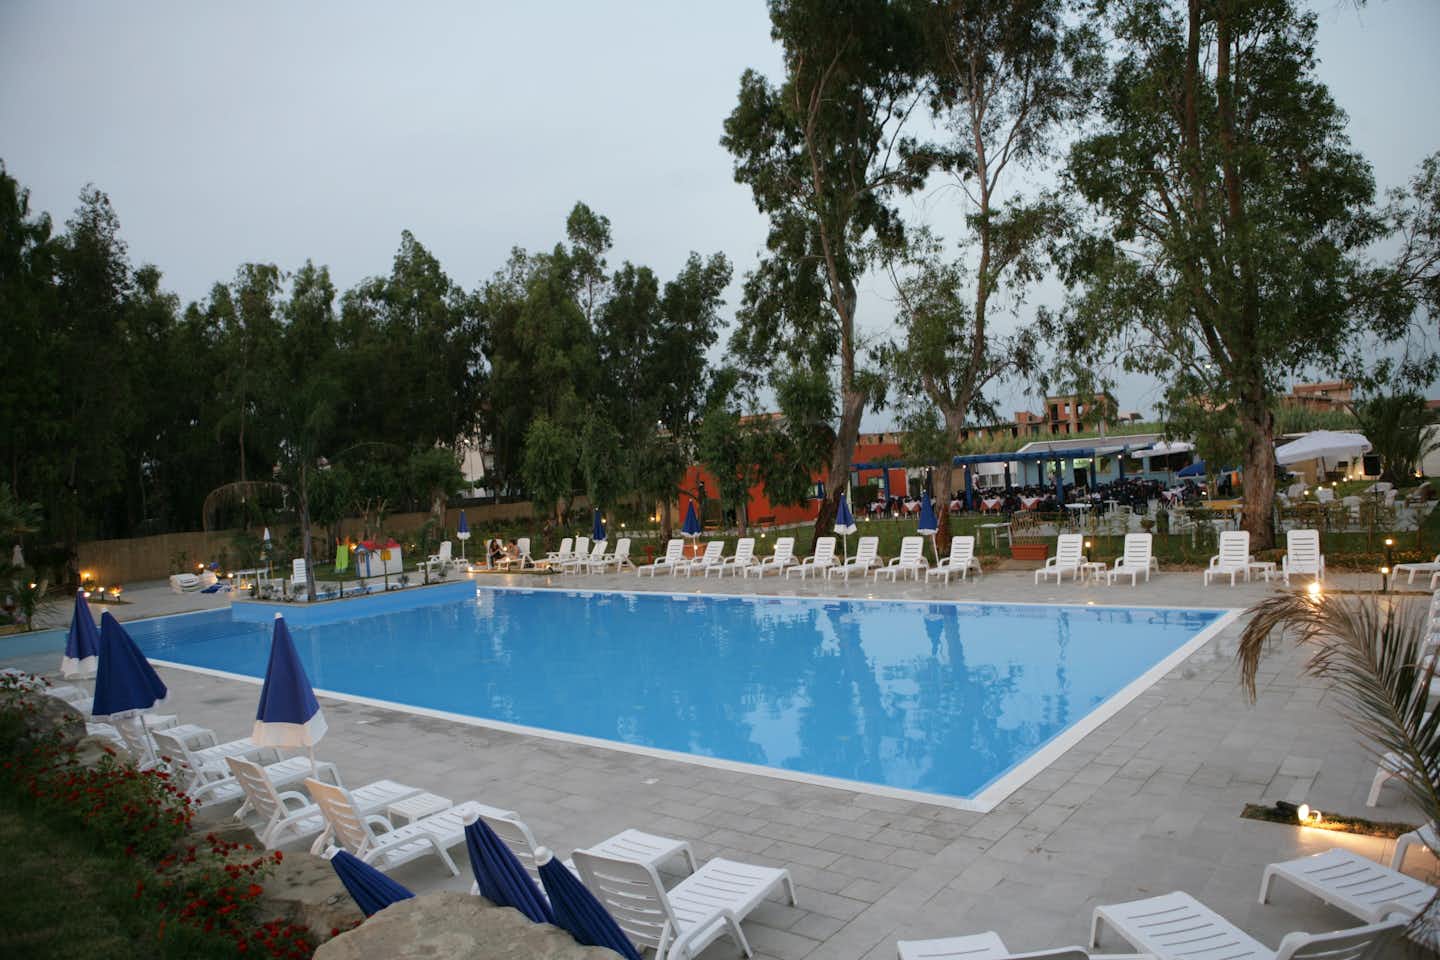 Camping Salicamp - Pool vom Campingplatz mit  Liegestühlen und Sonnenschirmen am Abend, Restaurant im Hintergrund